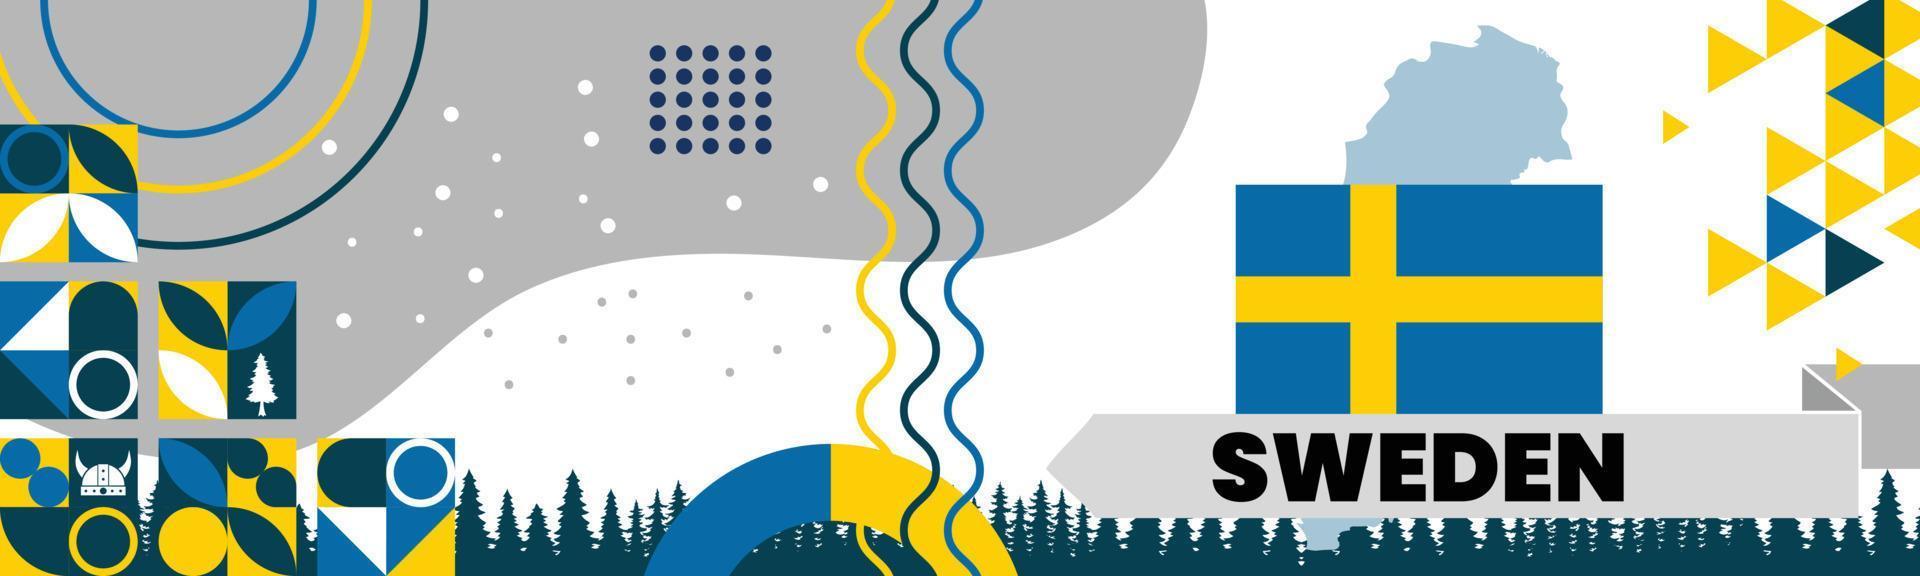 Sweden National Banner vector